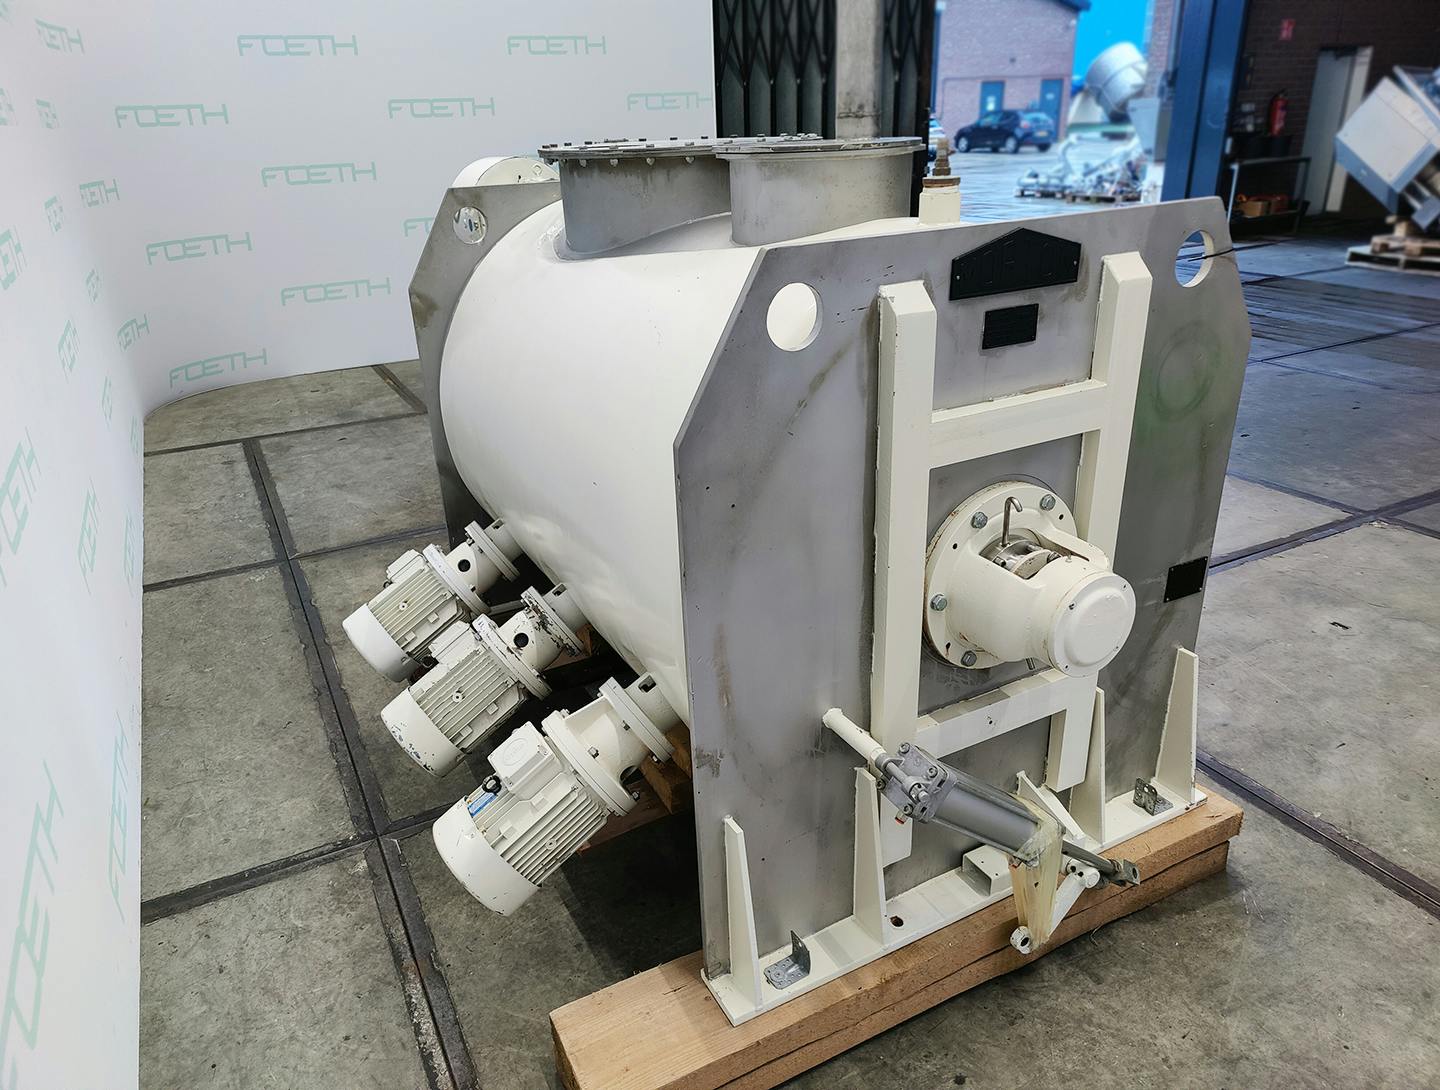 Morton FKM-1600 - Misturador turbo para pós - image 9